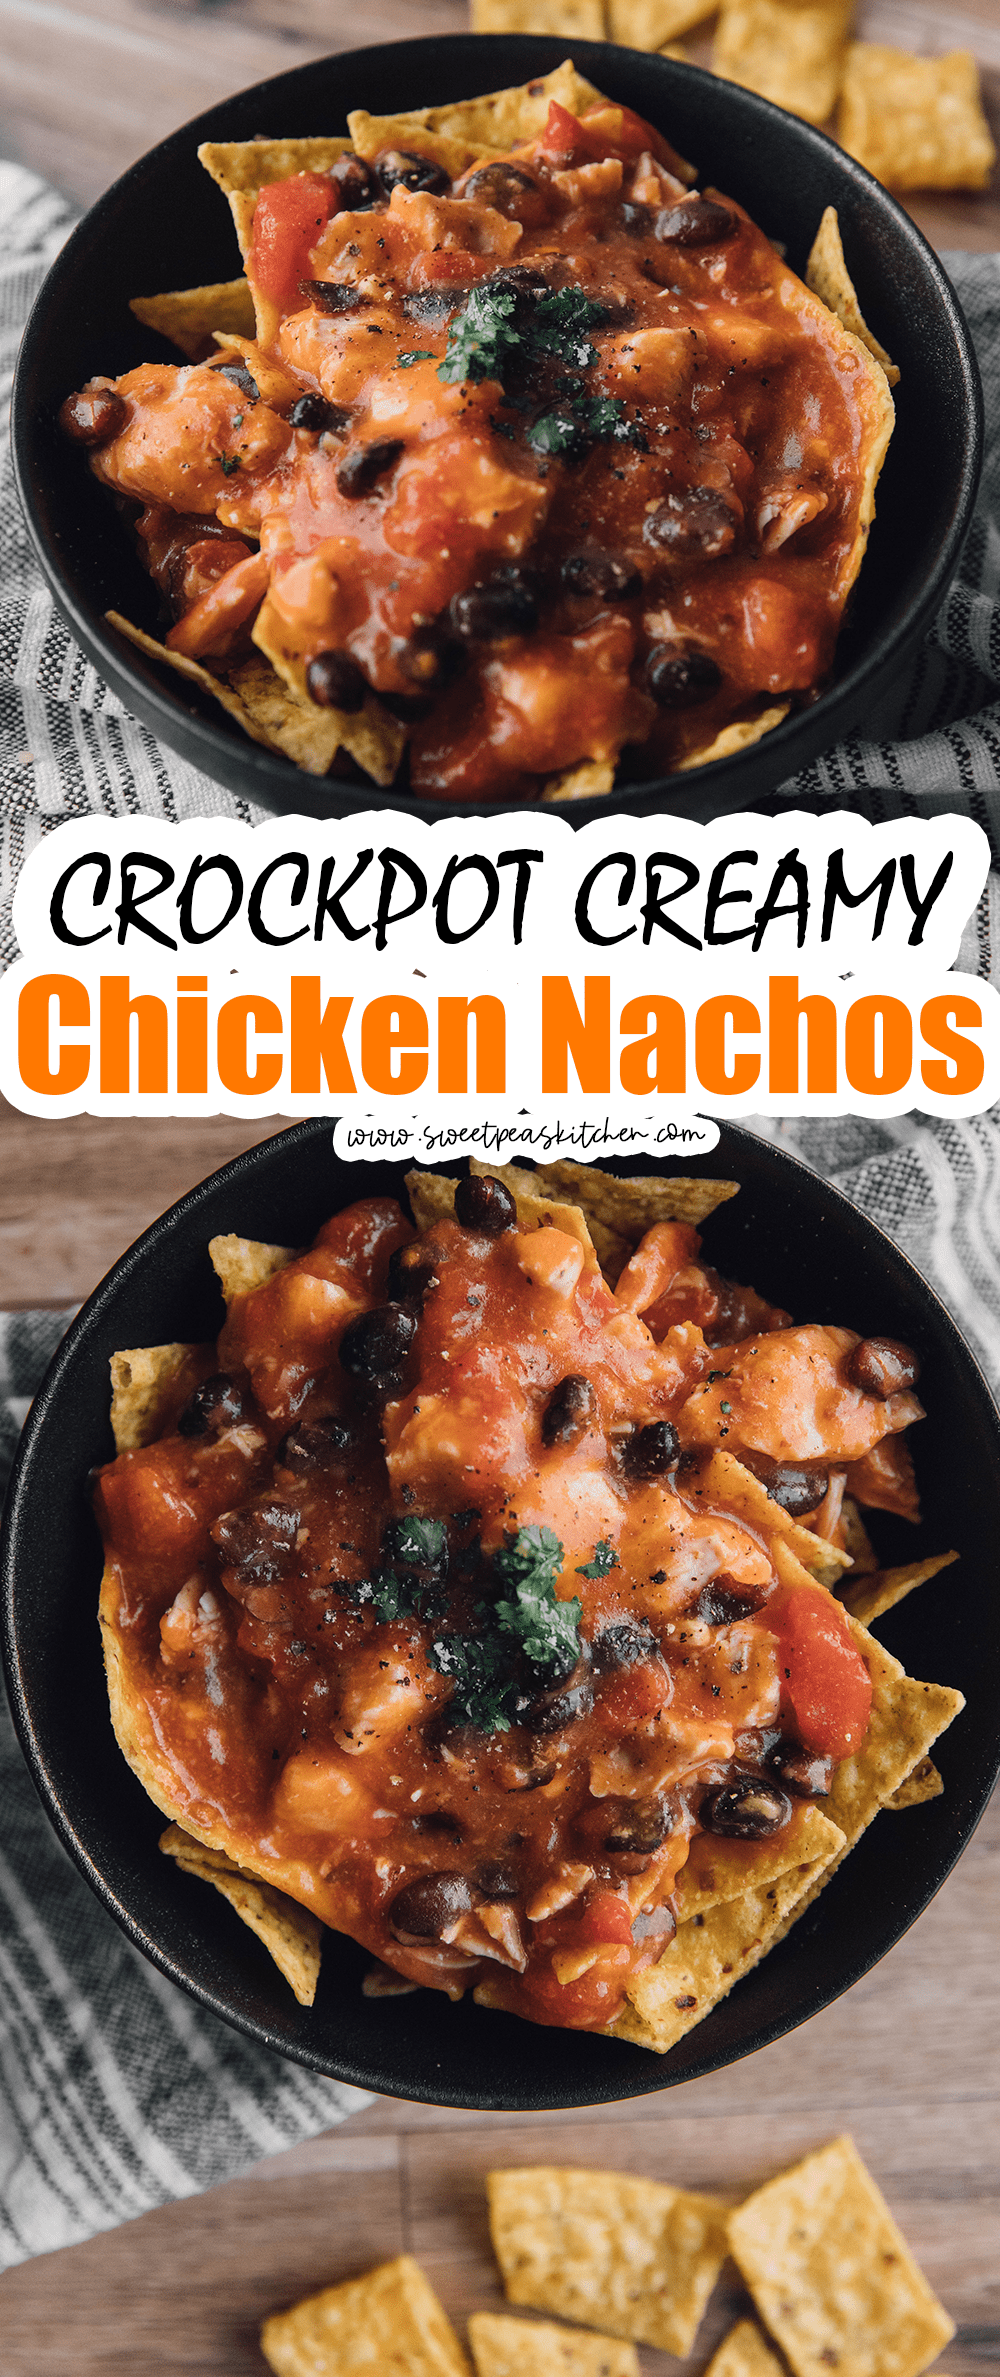 Crockpot Creamy Chicken Nachos